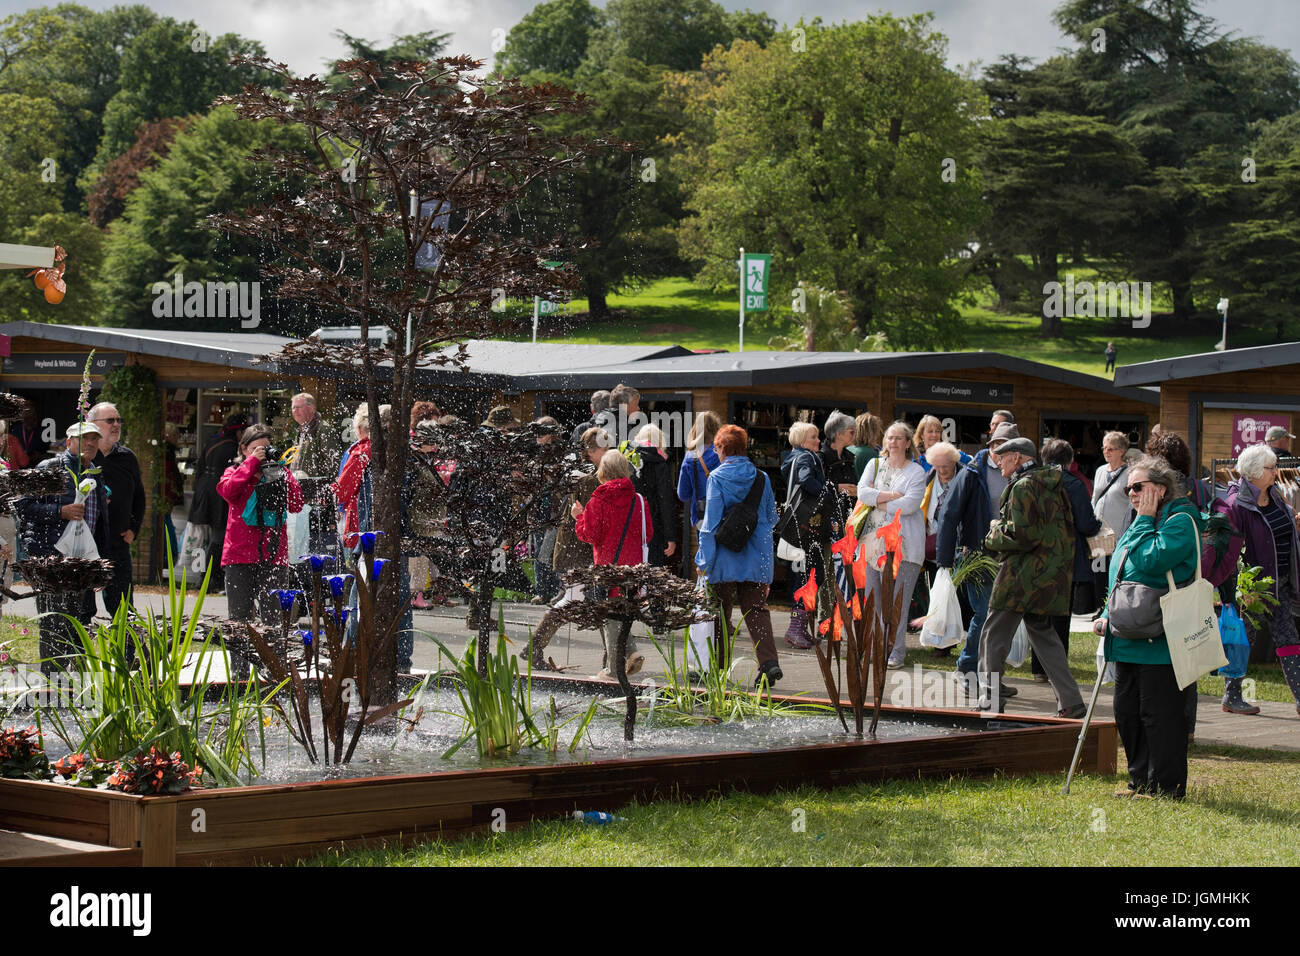 Viele Leute gehen Messestände & Ausstellung von Kupfer Wasser Originalskulpturen & Gartenfiguren - RHS Chatsworth Flower Show, Derbyshire, England, UK. Stockfoto